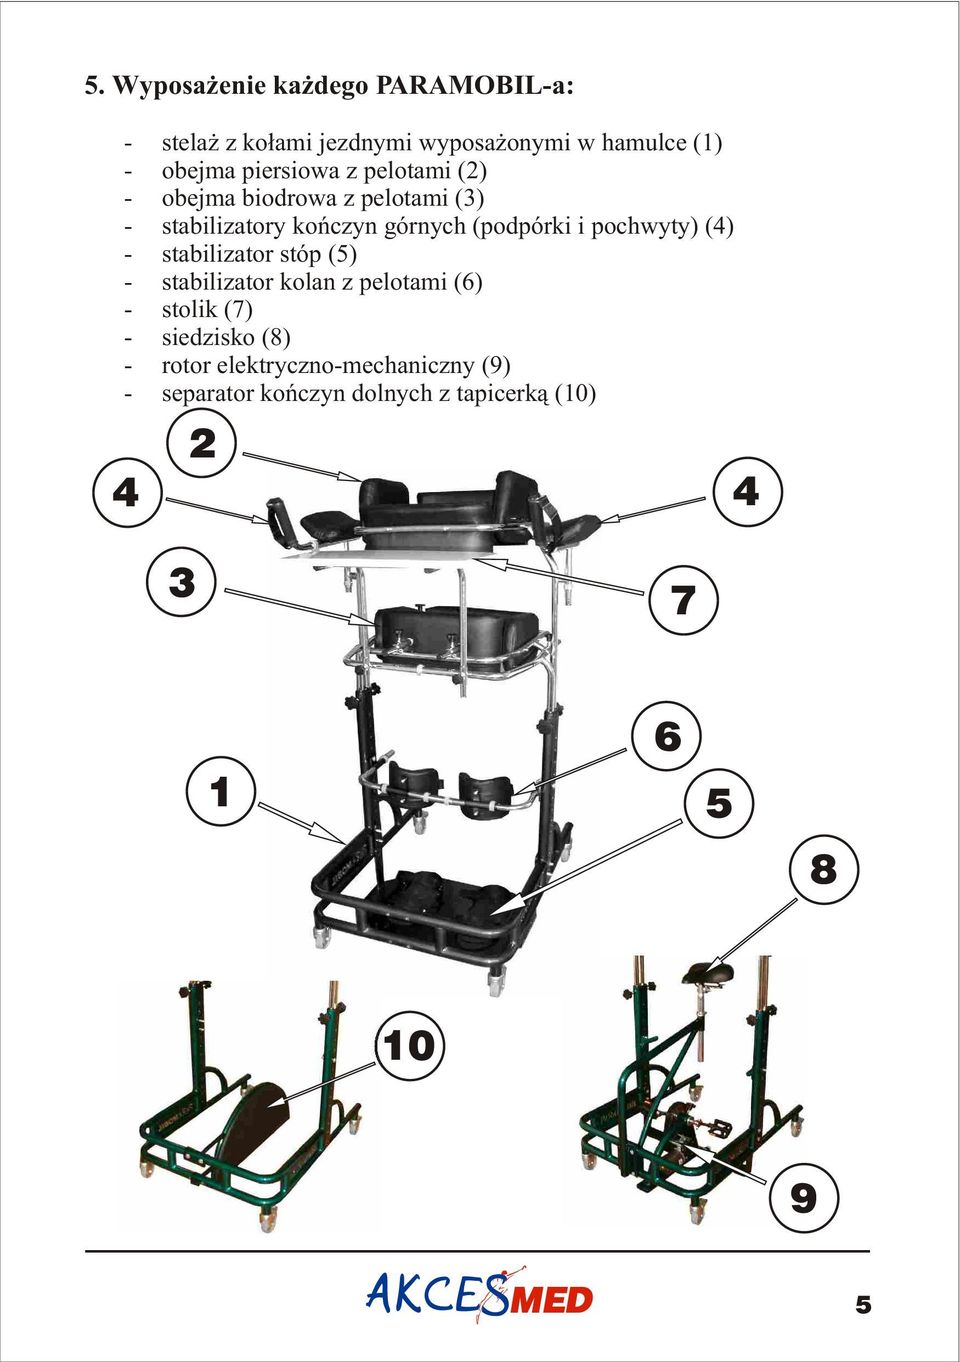 pochwyty) (4) - stabilizator stóp (5) - stabilizator kolan z pelotami (6) - stolik (7) - siedzisko